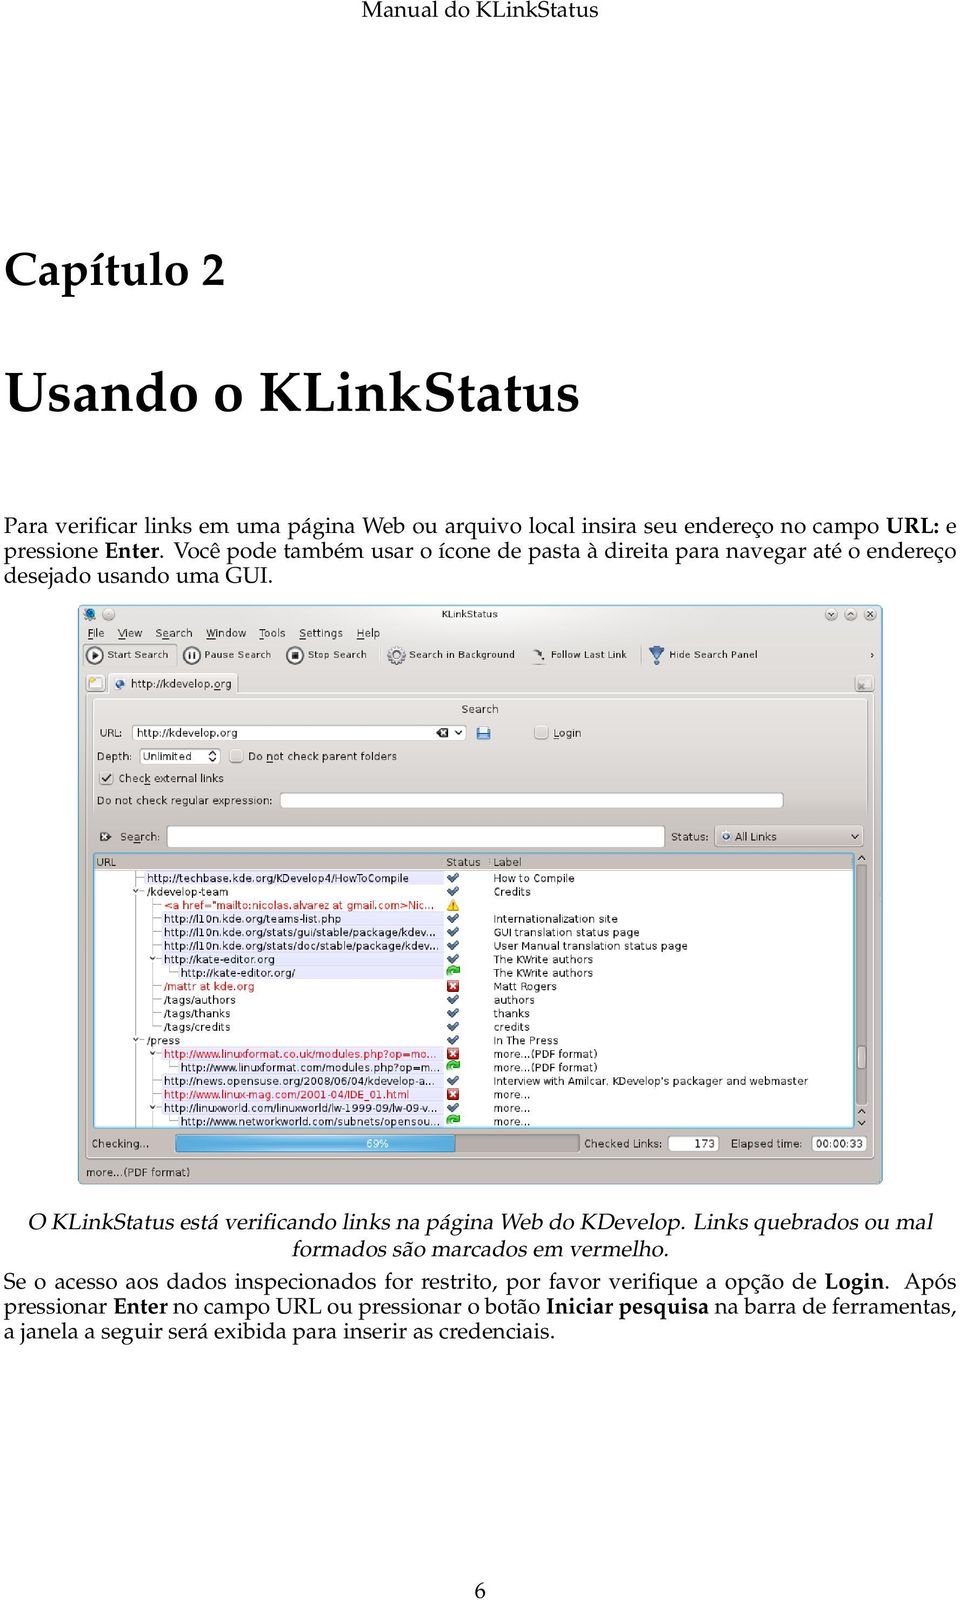 O KLinkStatus está verificando links na página Web do KDevelop. Links quebrados ou mal formados são marcados em vermelho.